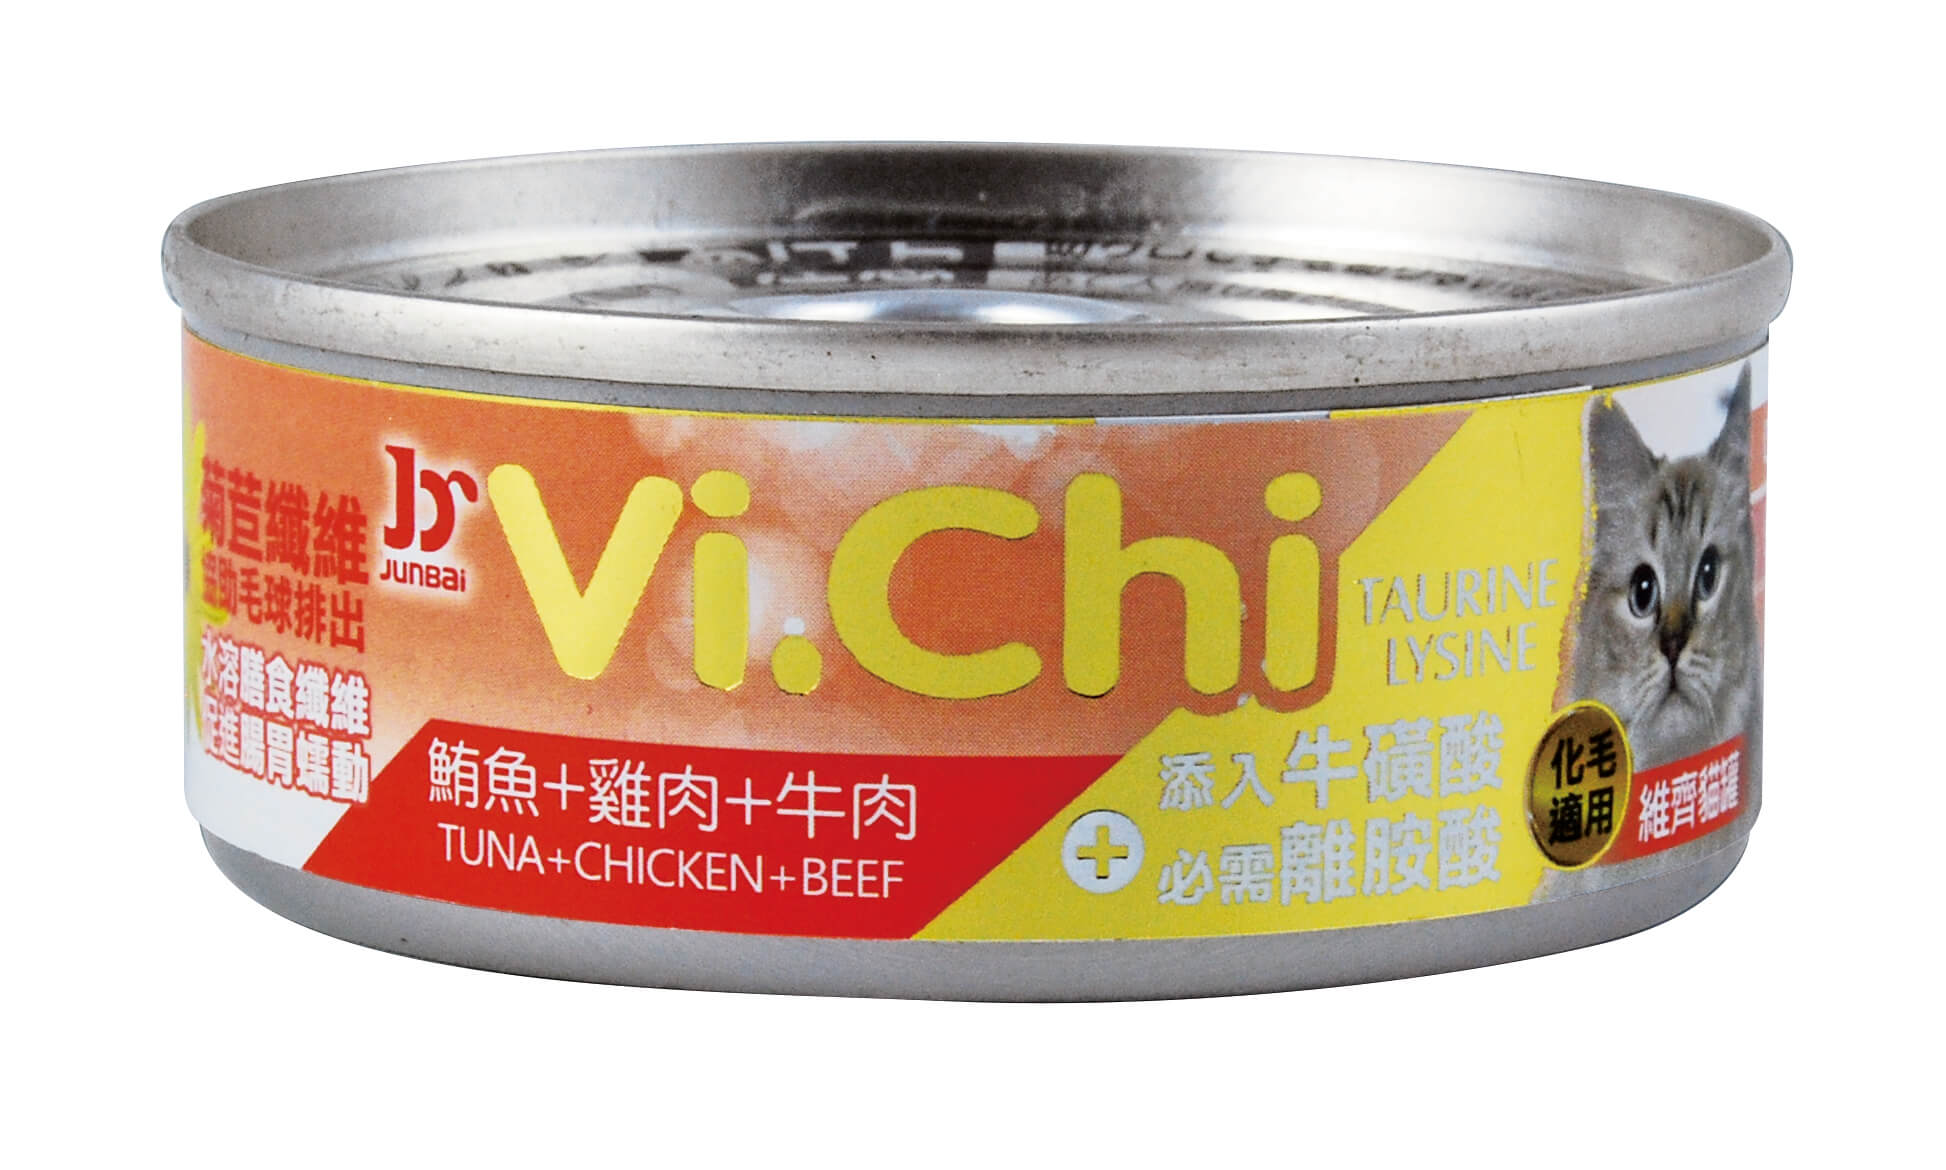 維齊貓罐-鮪魚+雞肉+牛肉
Vi.Chi cat can-tuna+chicken+beef